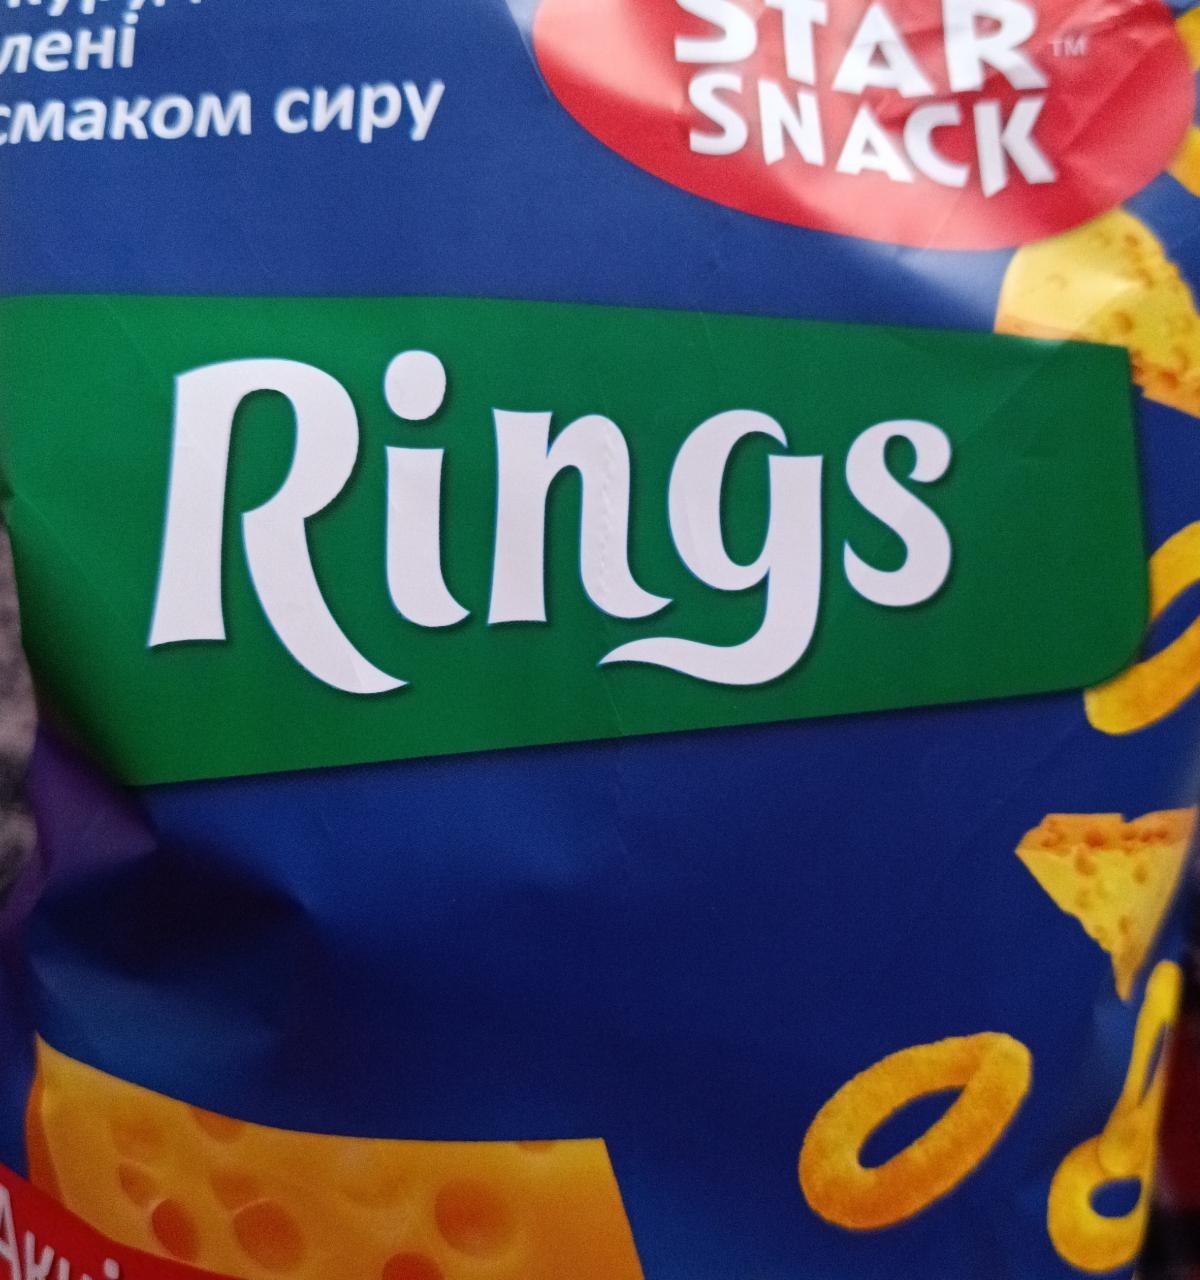 Фото - Rings зі смаком сиру Star snack